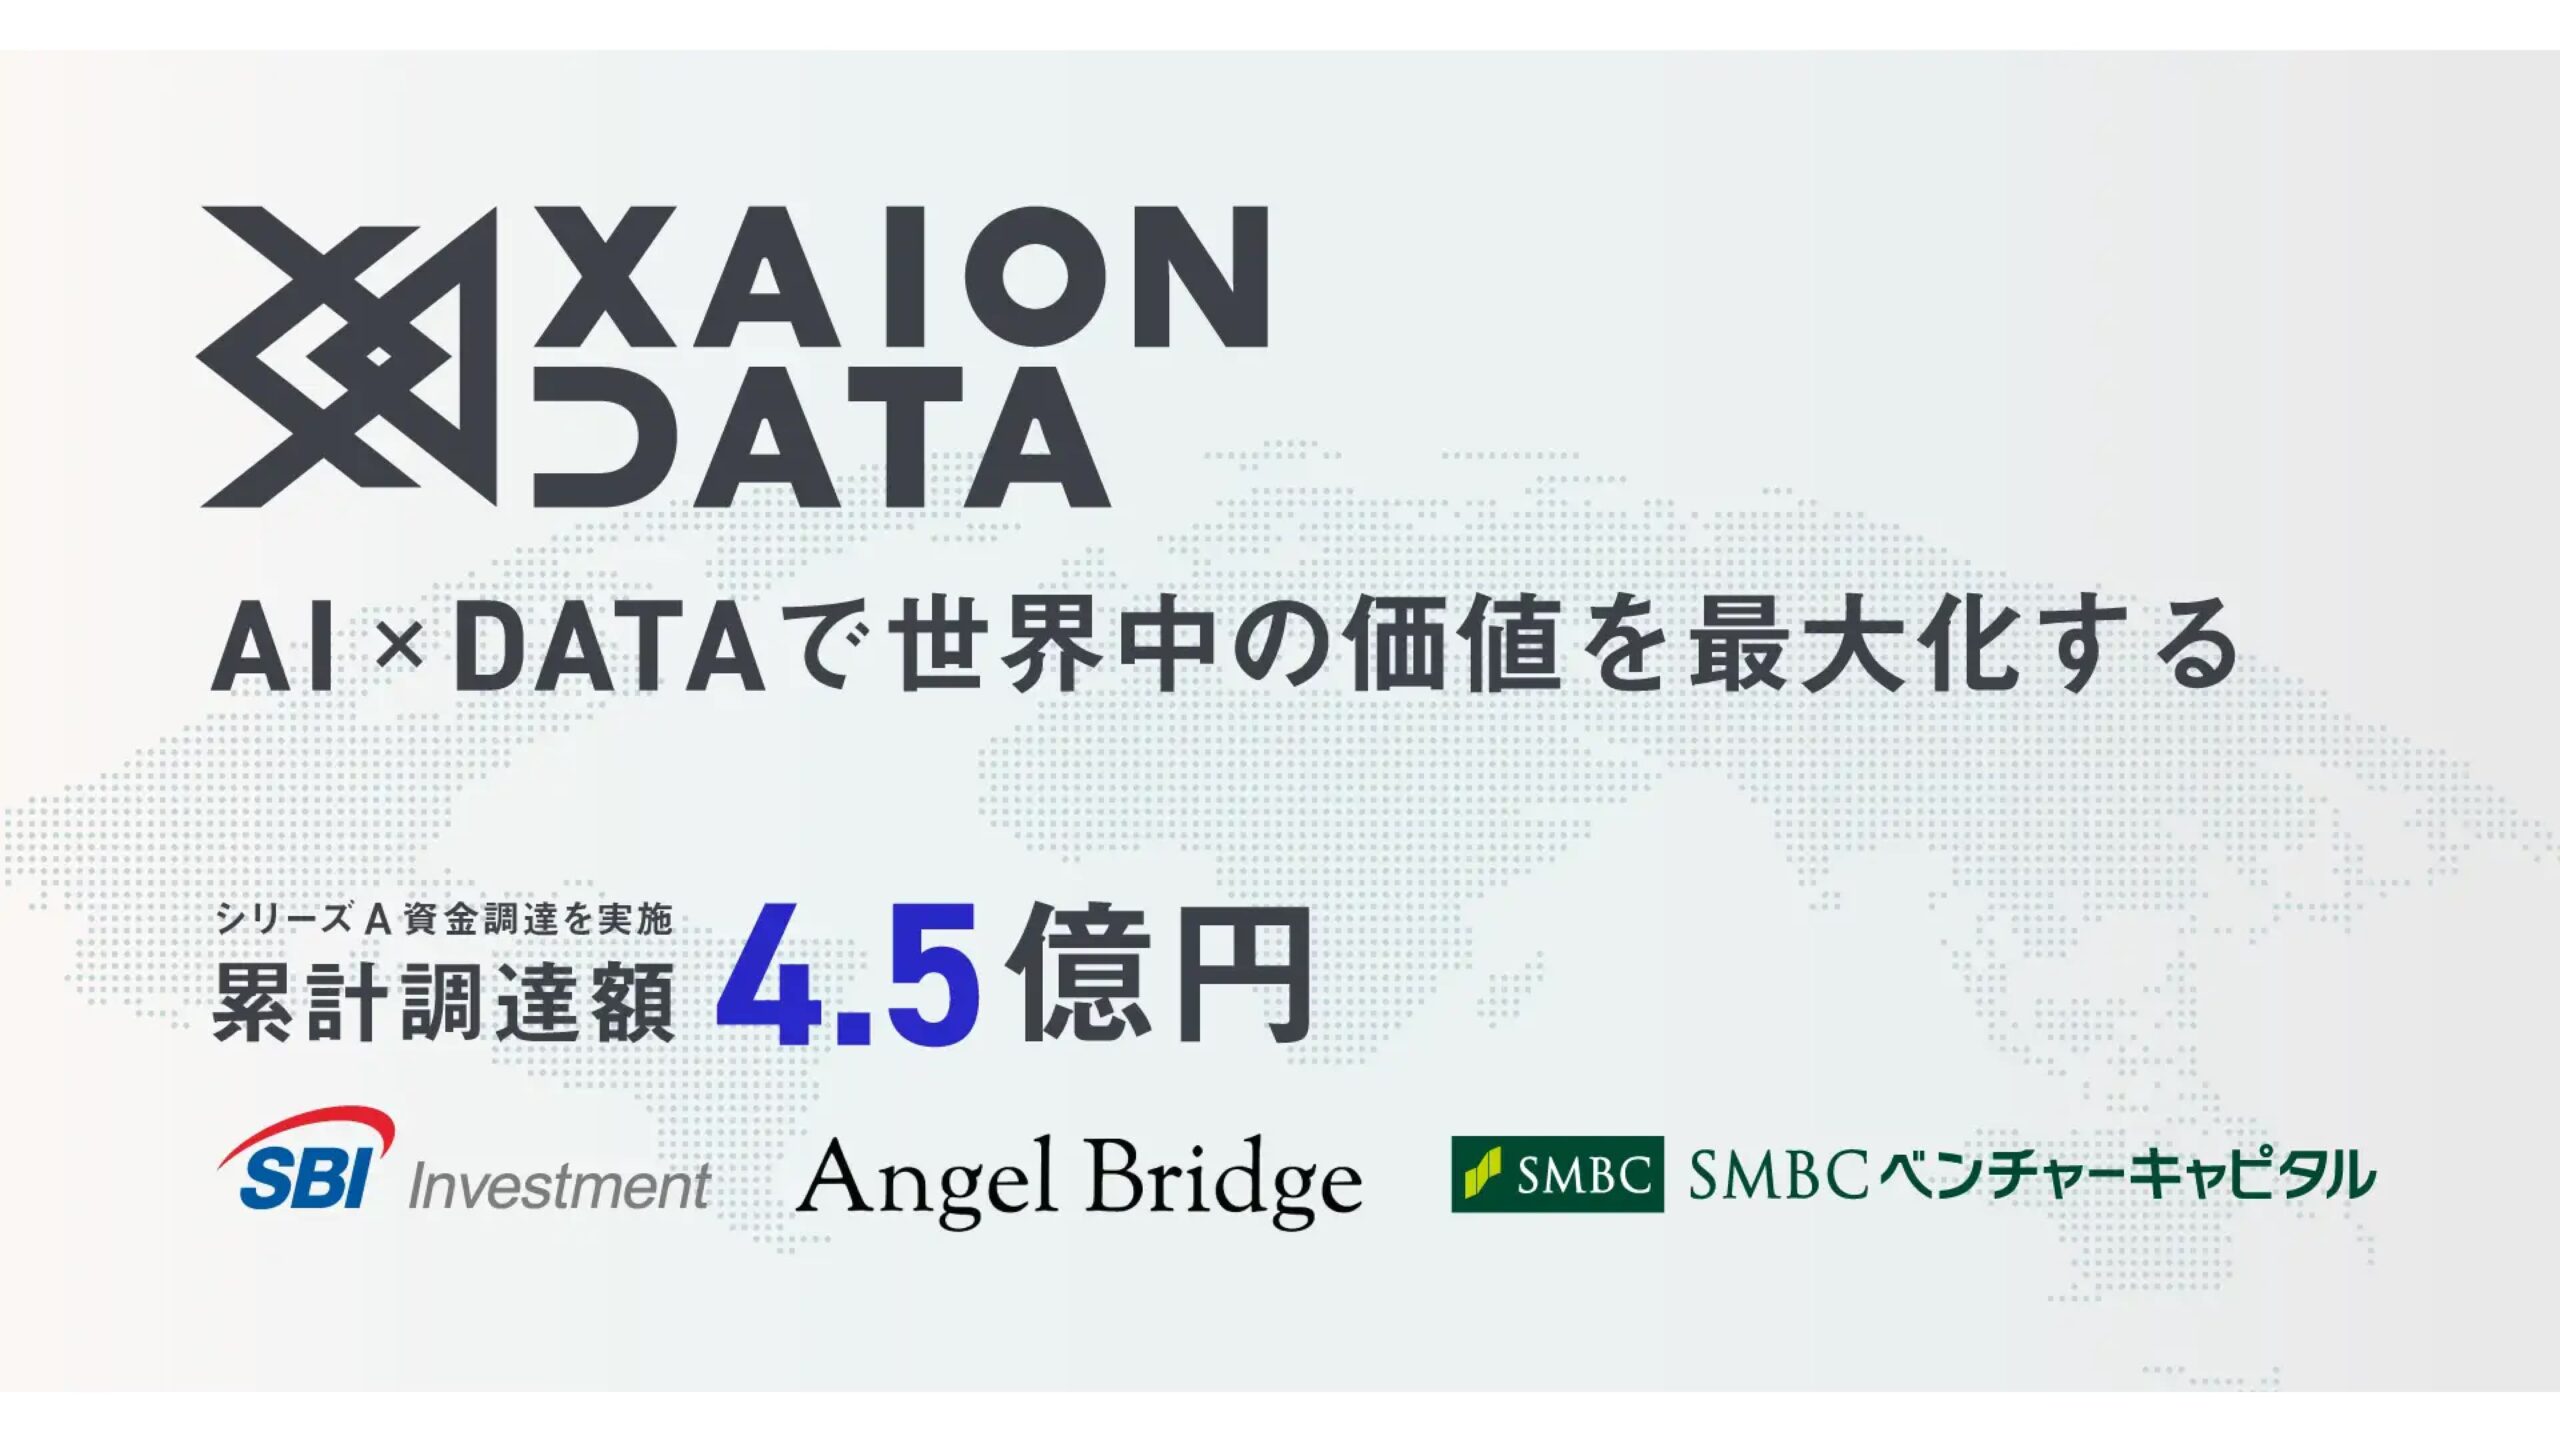 オープンデータを活用し採用支援・営業支援を行う株式会社XAION DATA、シリーズAにて資金調達を実施ー累計調達額は4.5億円に